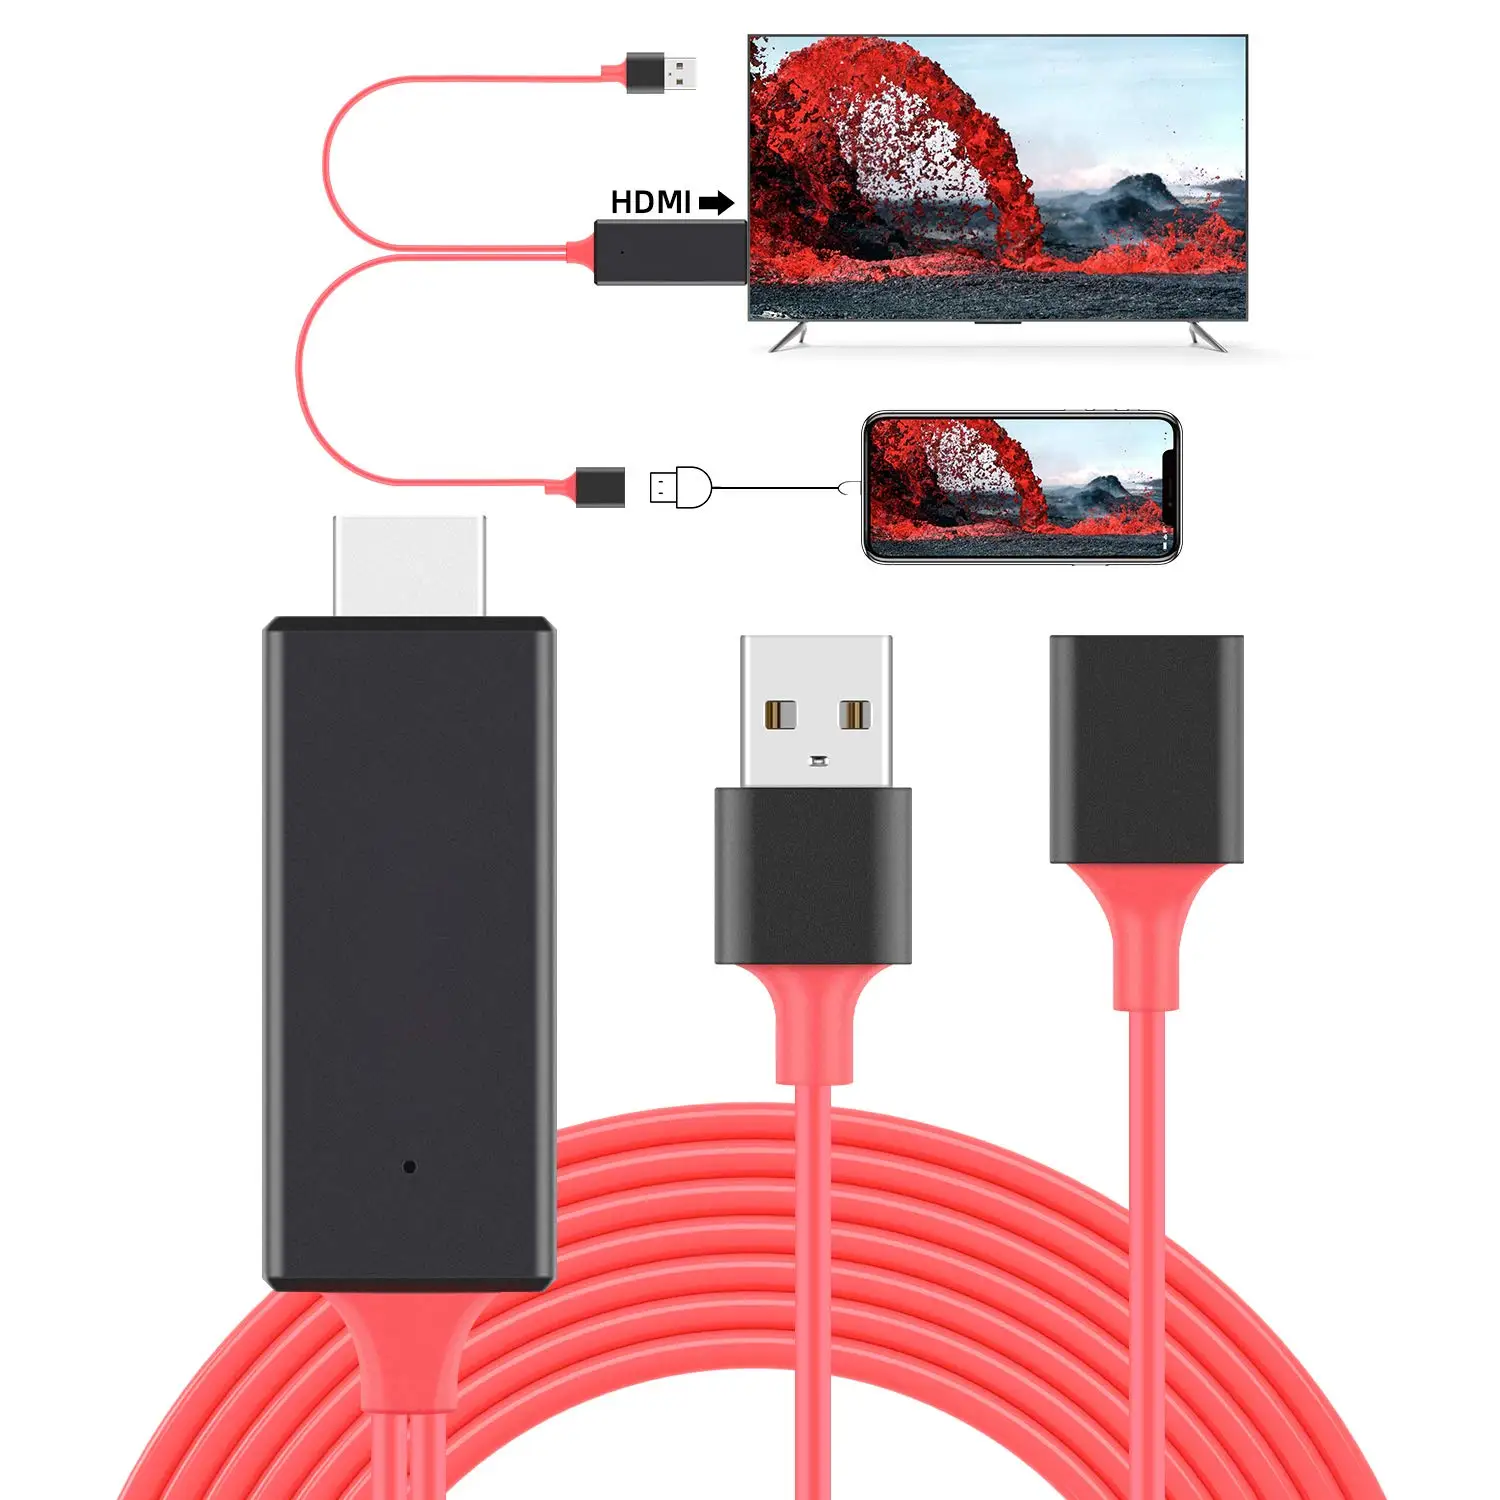 

Флеш-накопитель USB с гнездовым к HDMI 1080 Совместимость мужской зеркало кабель 3 в 1 мобильный телефон Универсальный поделиться Экран видео ТВ а...